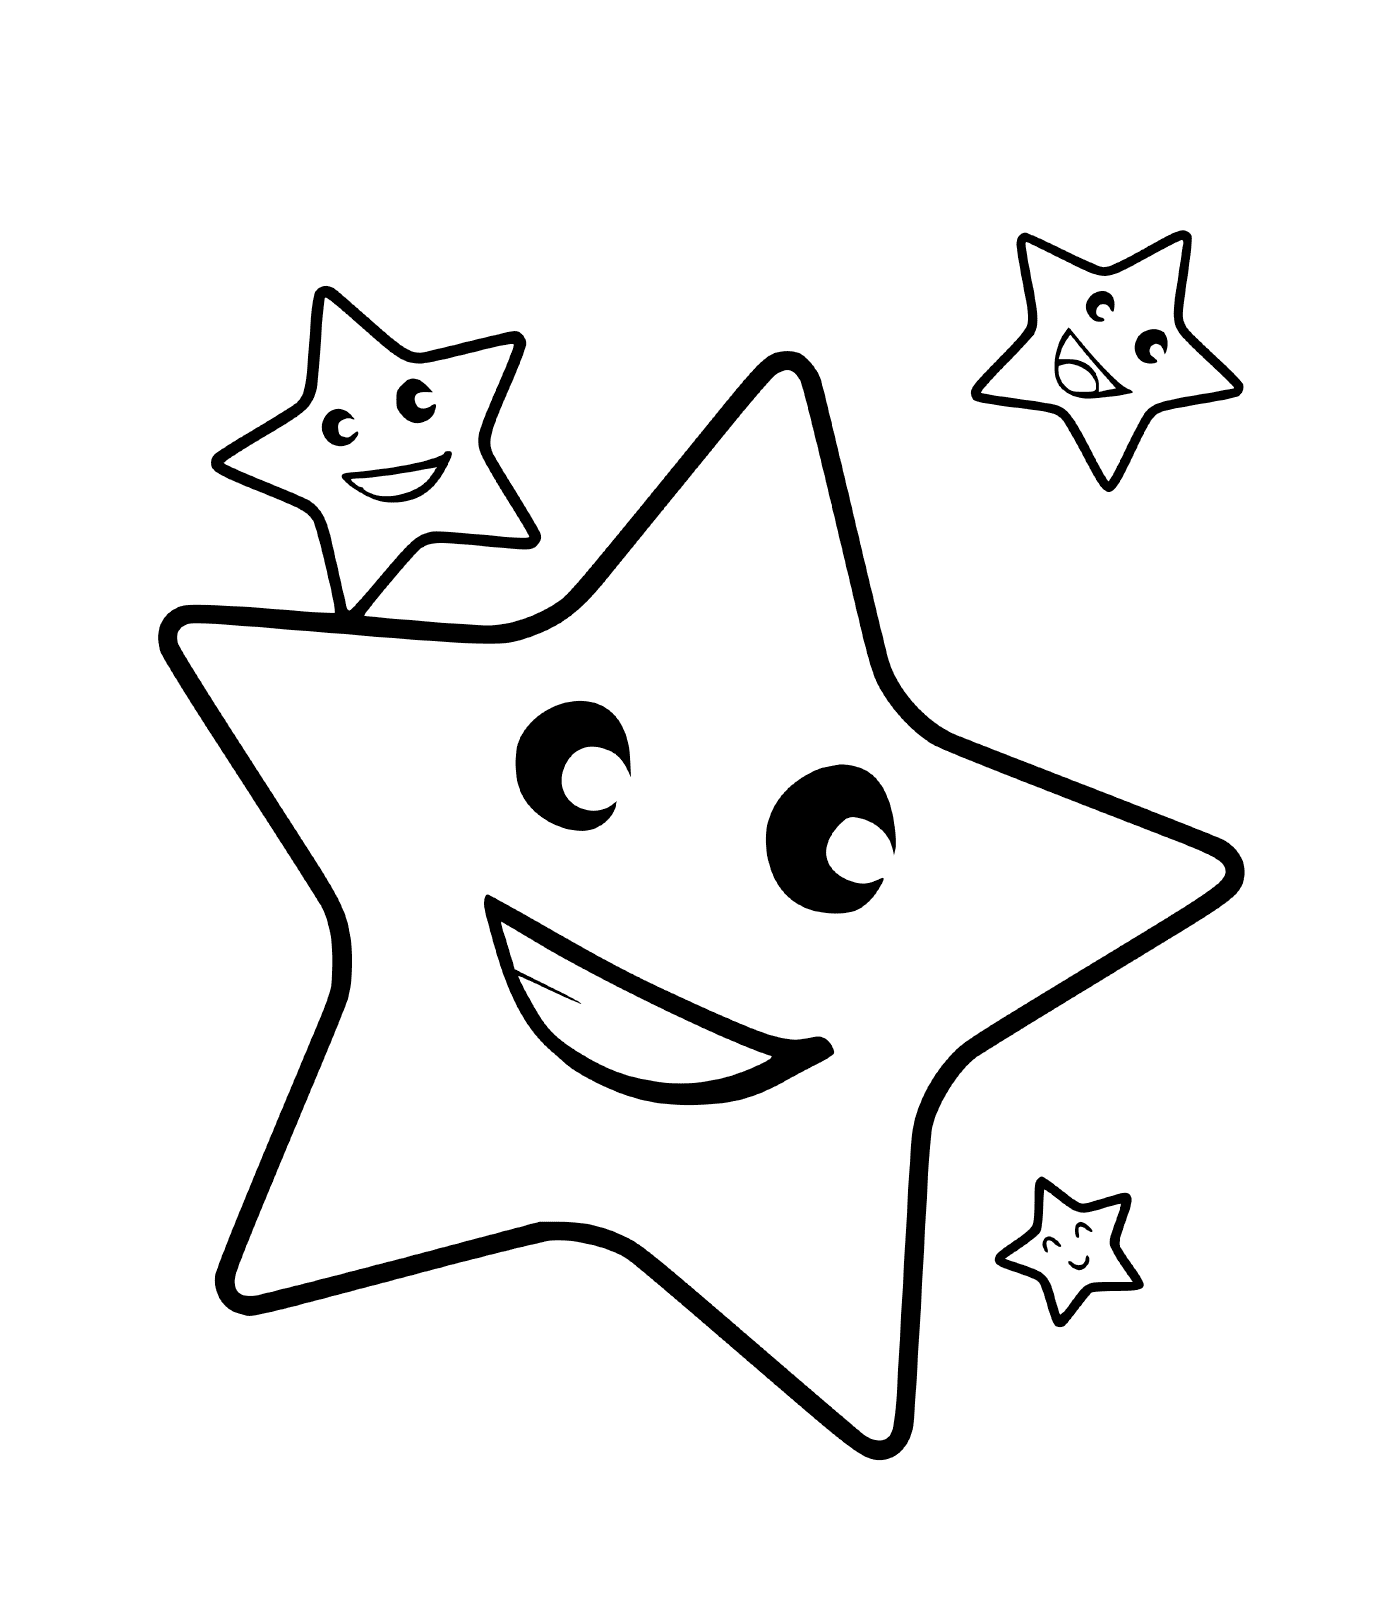   Une étoile avec trois visages souriants 